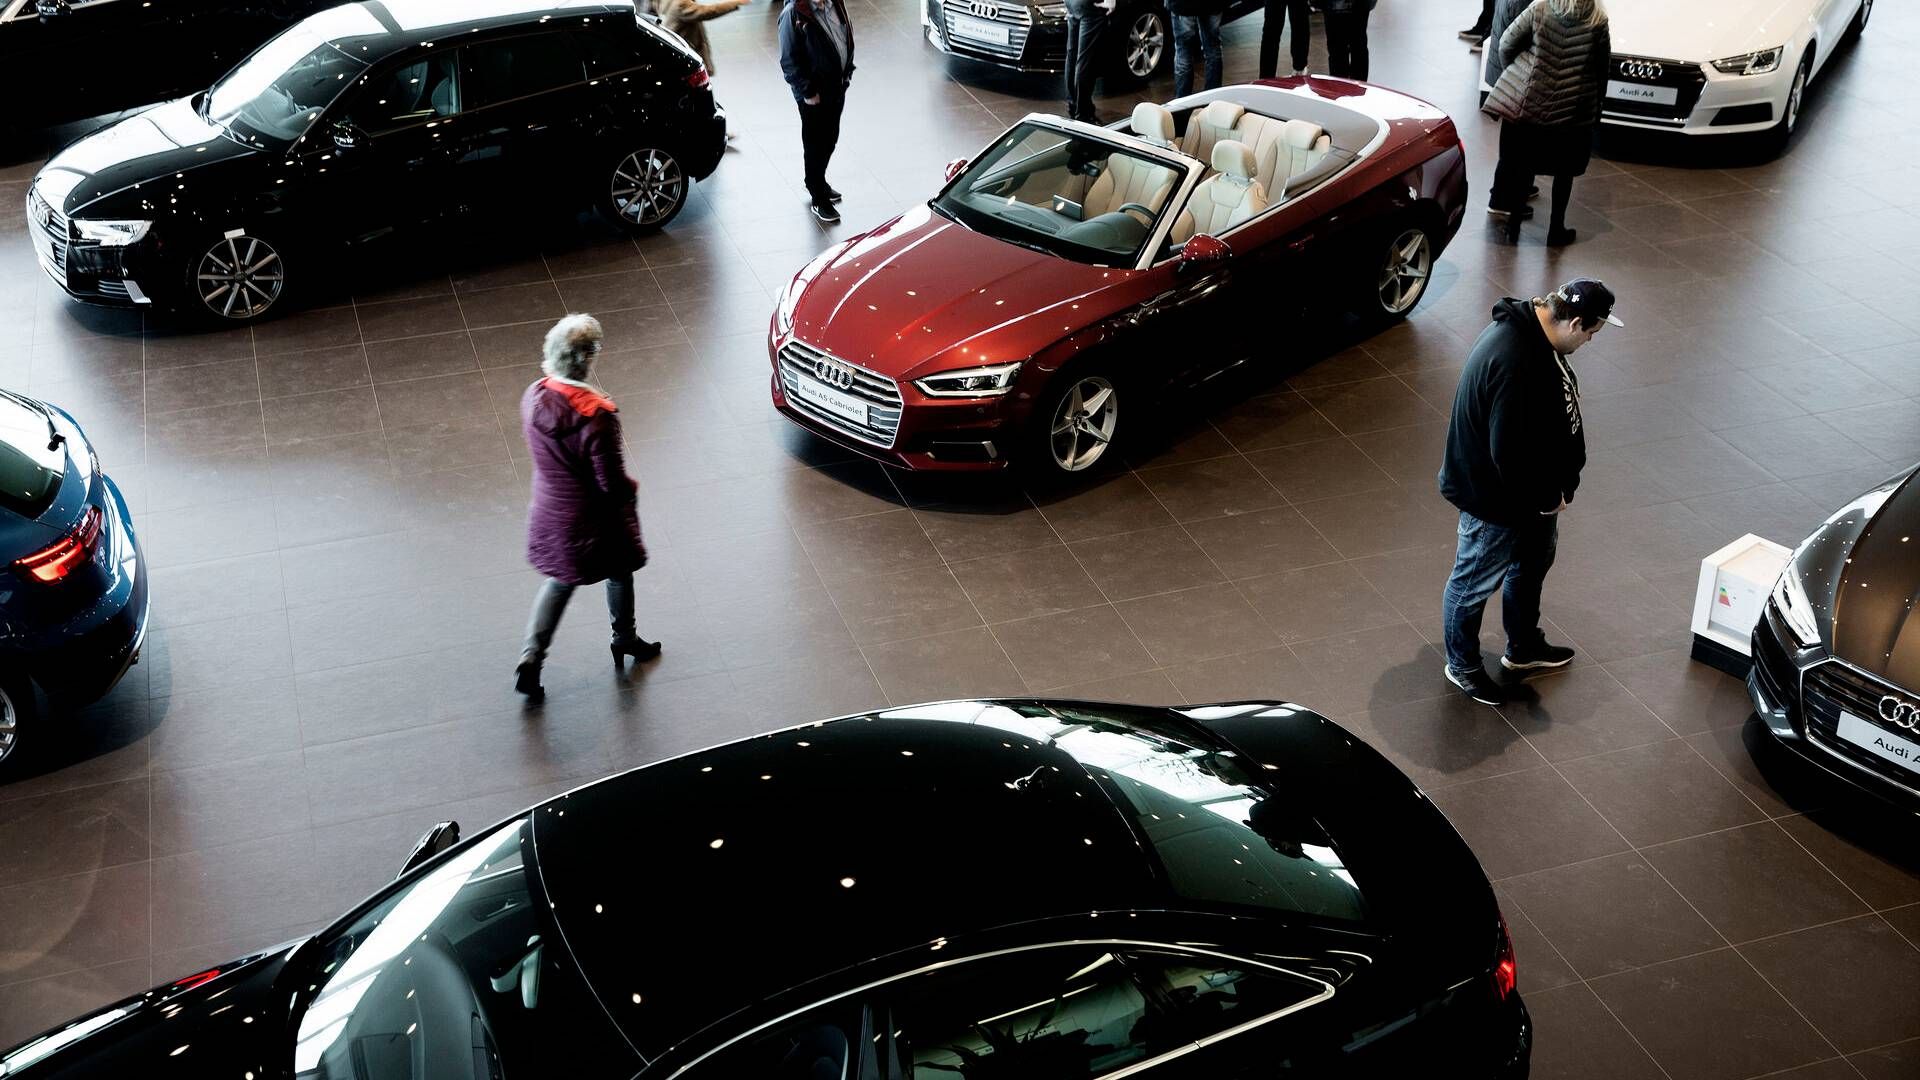 ”Tæt på halvdelen af bilforhandlerne melder, at de har for stort et lager,” skriver Jeppe Juul Borre, der er cheføkonom i Arbejdernes Landsbank. | Foto: Peter Hove Olesen/Politiken/Ritzau Scanpix